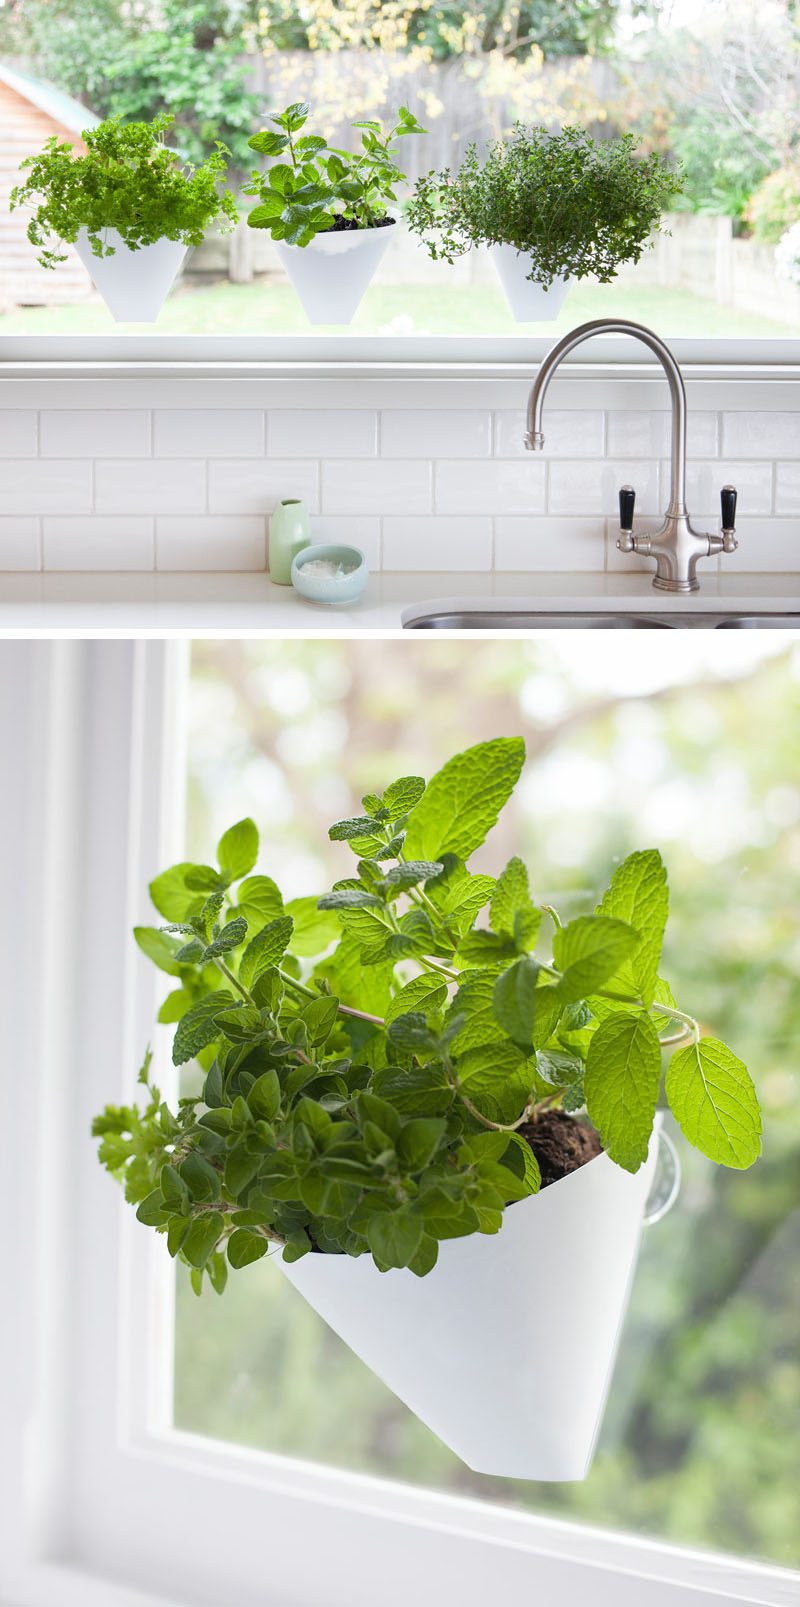 Идеи для внутреннего сада - повесьте свои растения на потолок & amp; Стены // Эти кашпо присоски к окну.